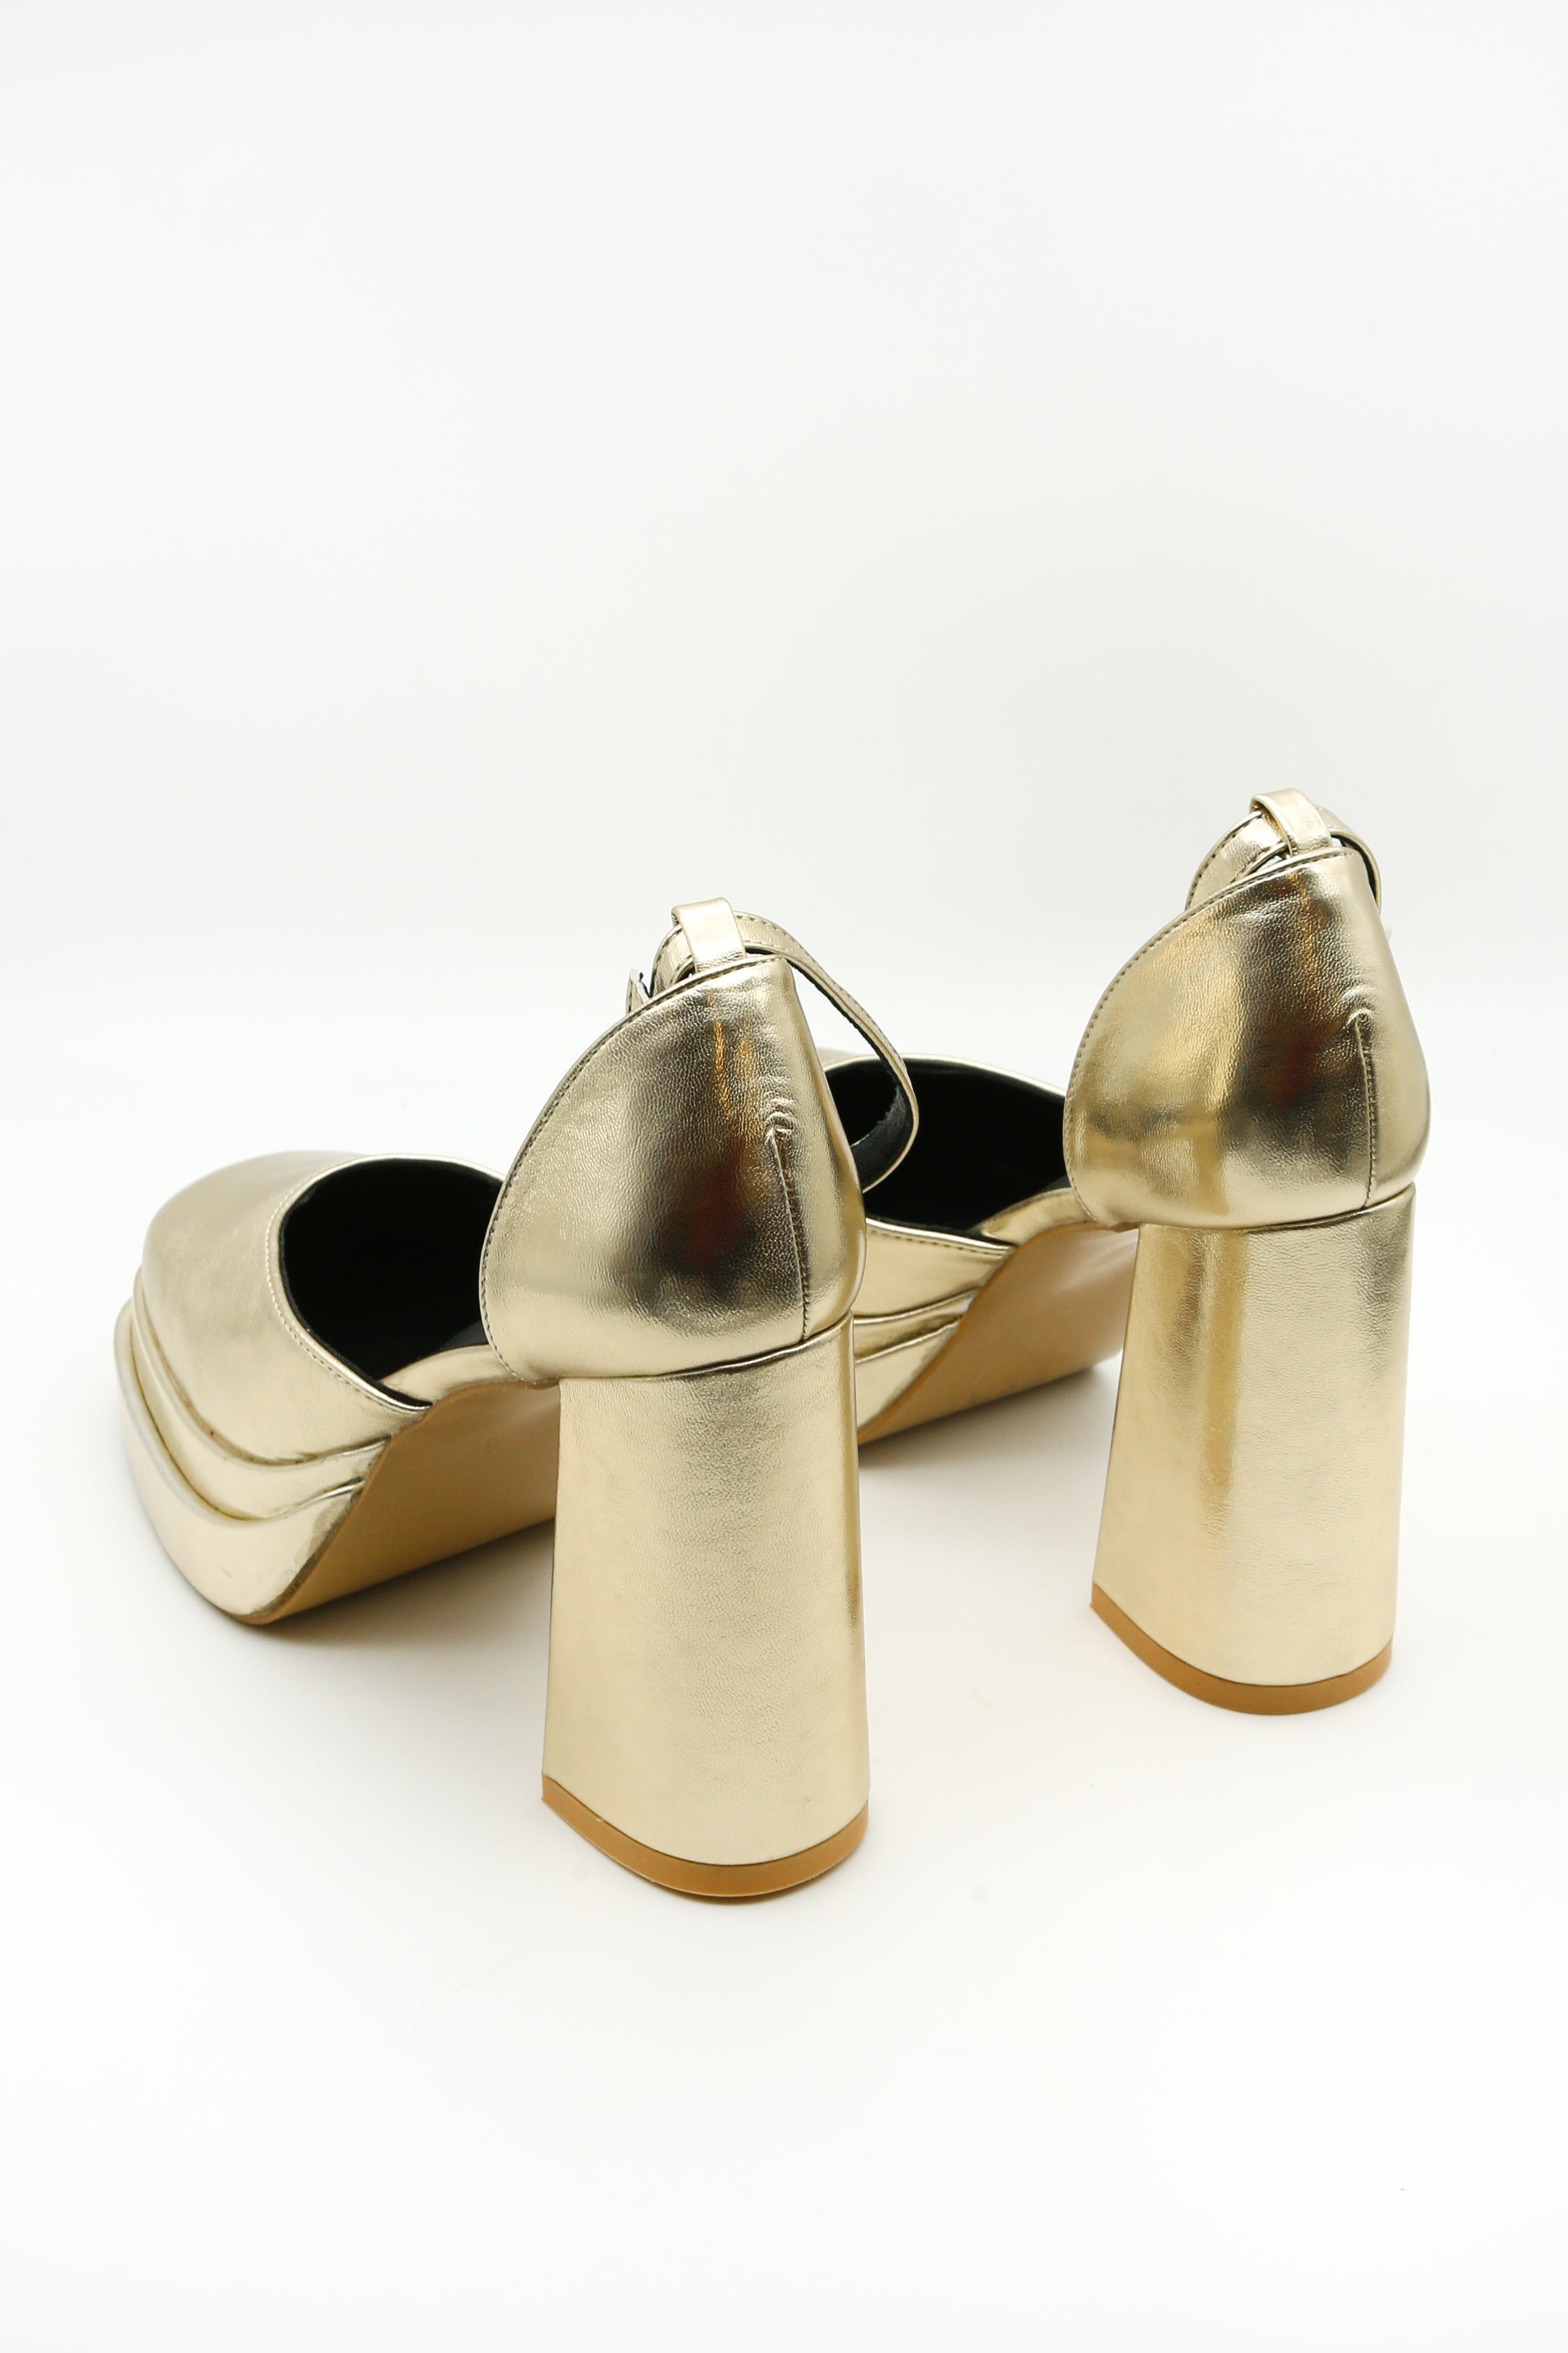 Saraih Gold Metallic Ankle Strap High Heel Sandals | Sandals heels, Gold  kitten heels, Heels